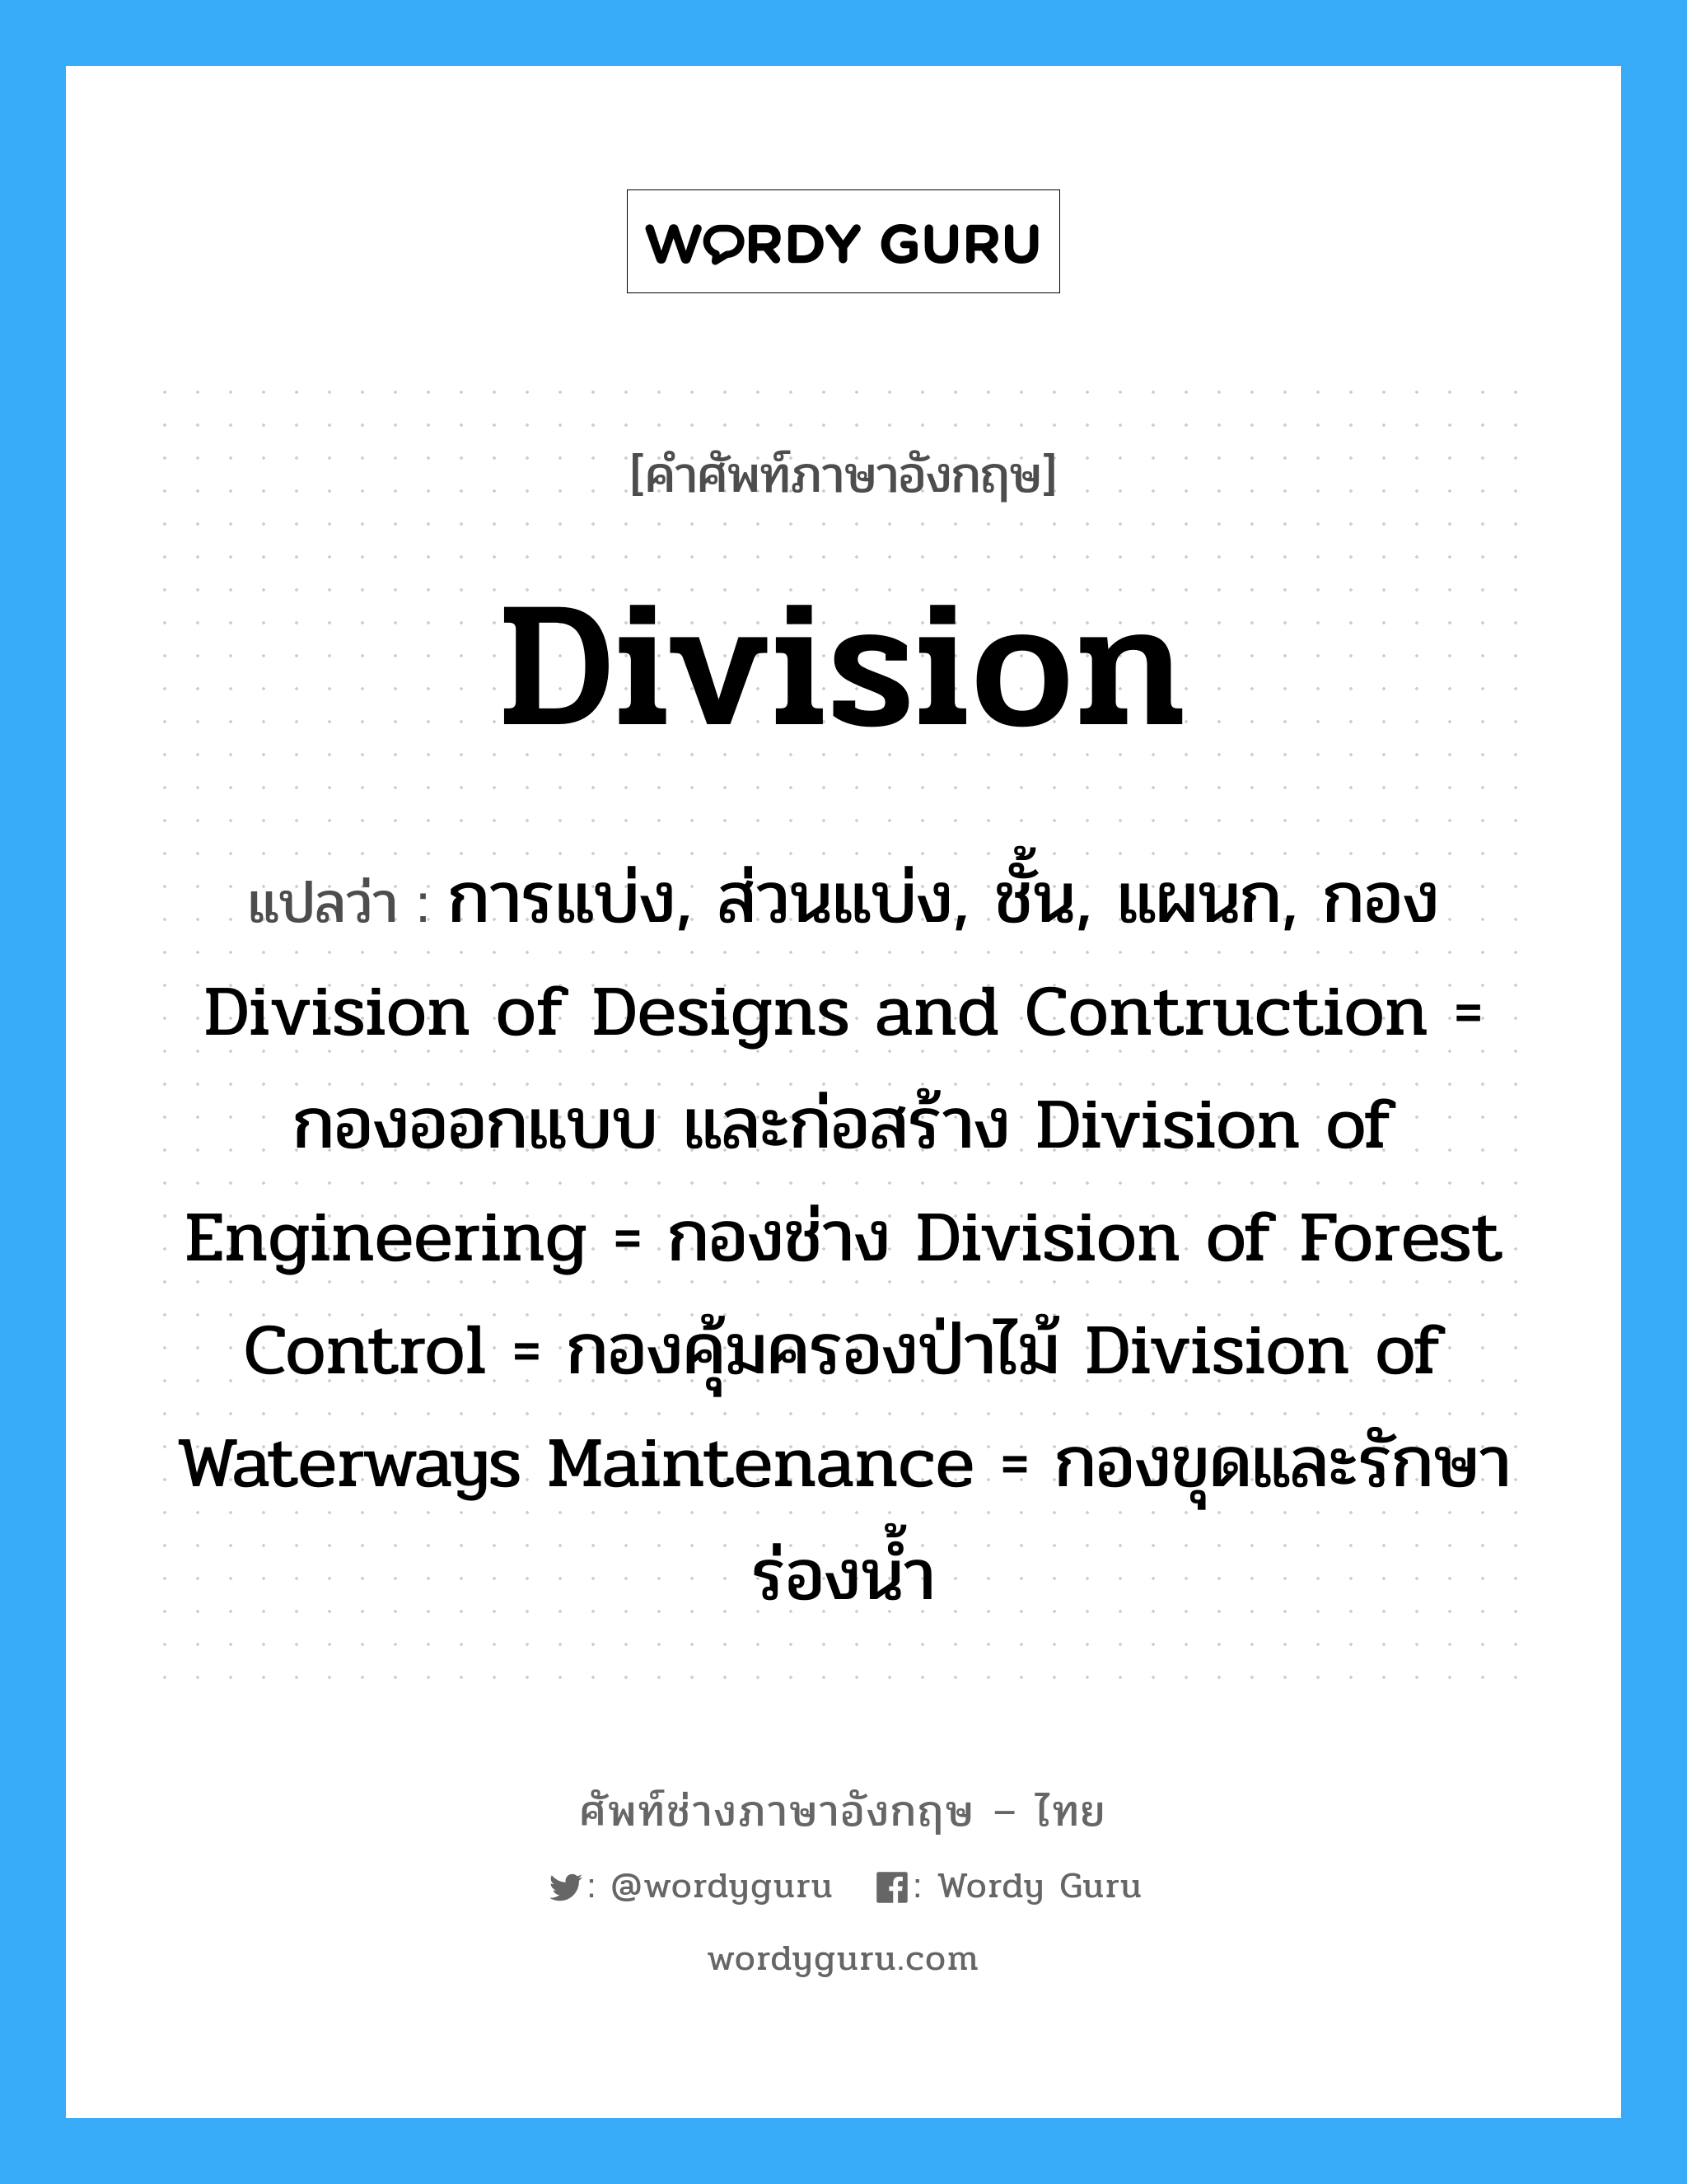 division แปลว่า?, คำศัพท์ช่างภาษาอังกฤษ - ไทย division คำศัพท์ภาษาอังกฤษ division แปลว่า การแบ่ง, ส่วนแบ่ง, ชั้น, แผนก, กอง Division of Designs and Contruction = กองออกแบบ และก่อสร้าง Division of Engineering = กองช่าง Division of Forest Control = กองคุ้มครองป่าไม้ Division of Waterways Maintenance = กองขุดและรักษาร่องน้ำ